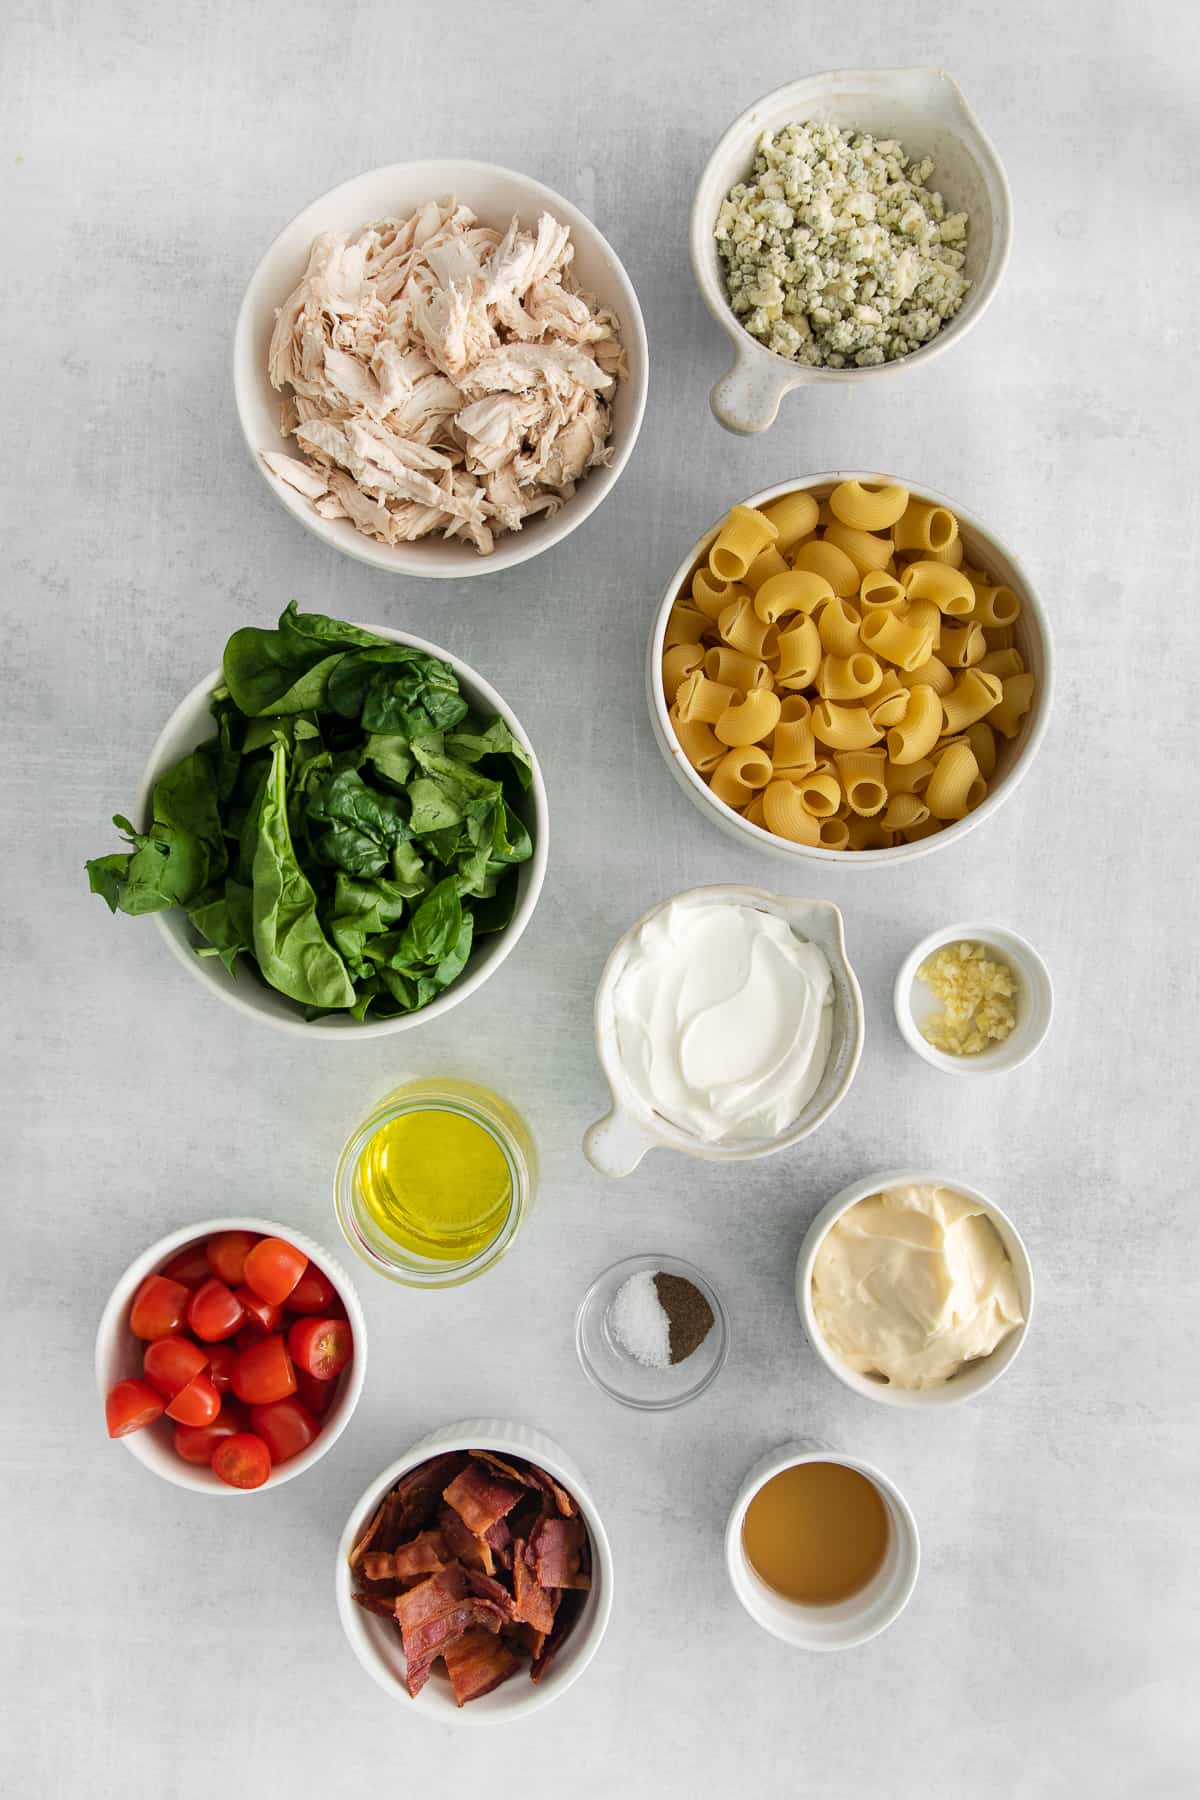 Ingredients for gorgonzola chicken pasta salad in bowls.